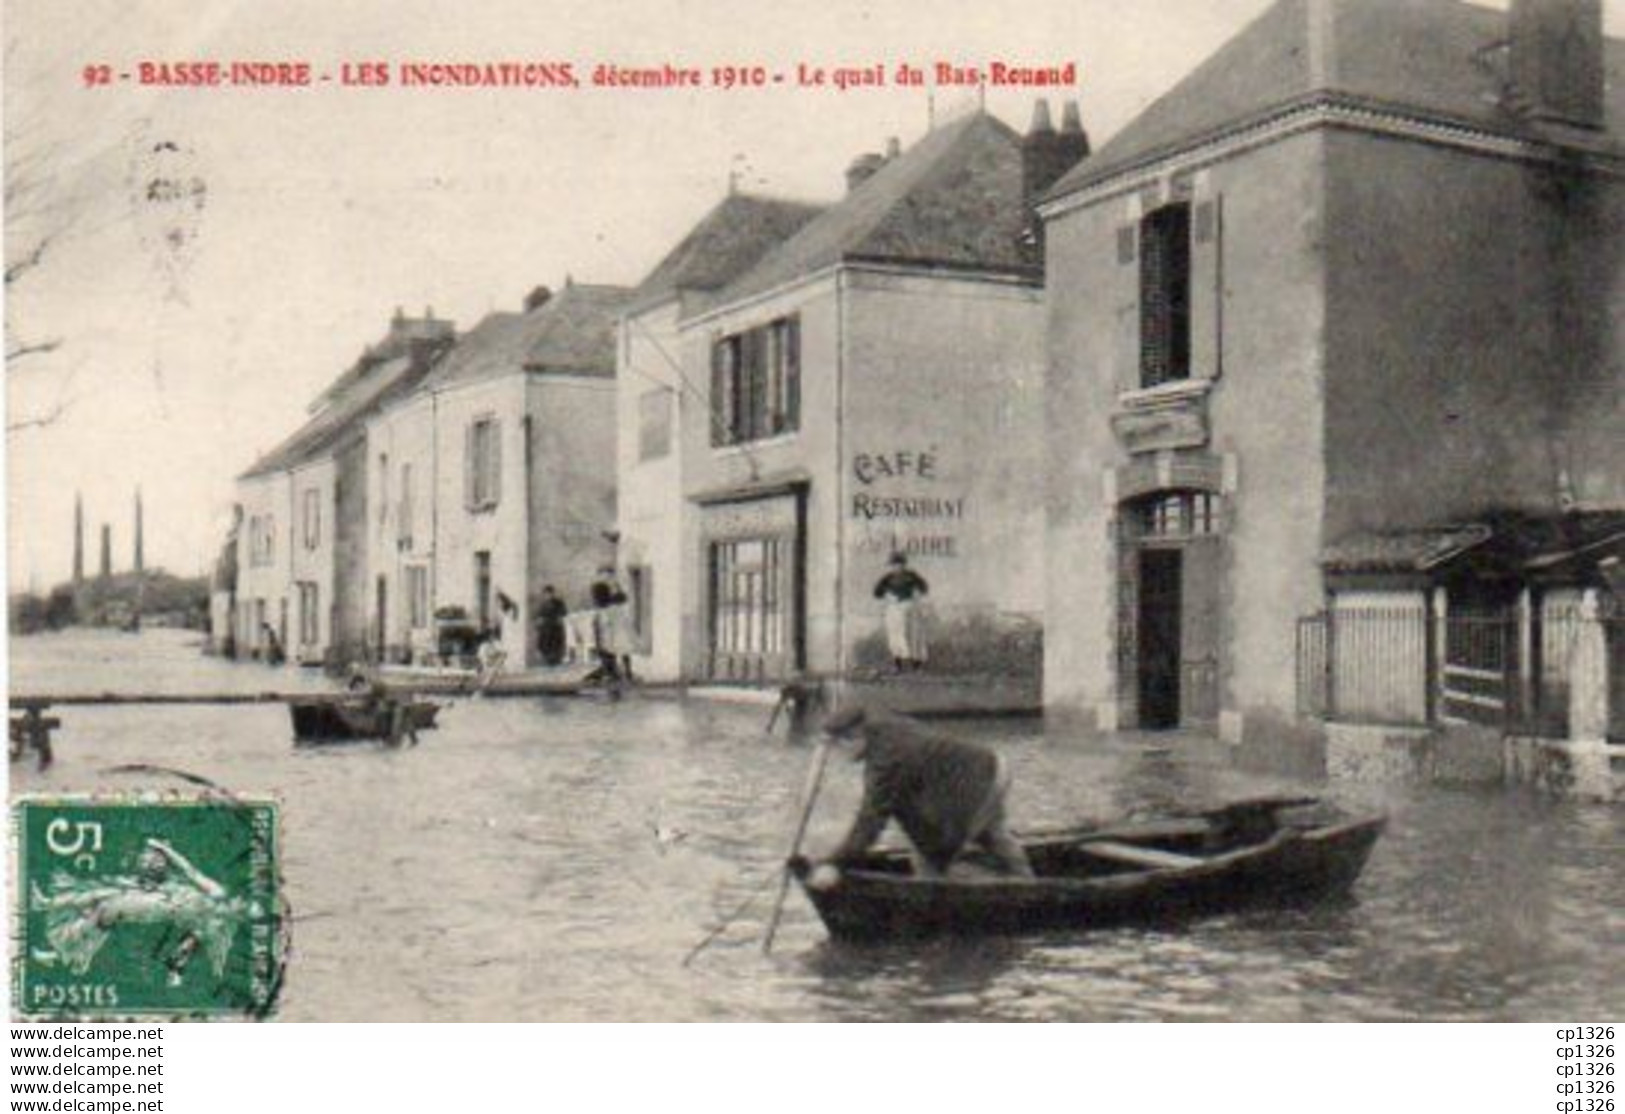 2V7Mz   44 Basse Indre Les Inondations 1910 Le Quai Du Bas Rouaud - Basse-Indre